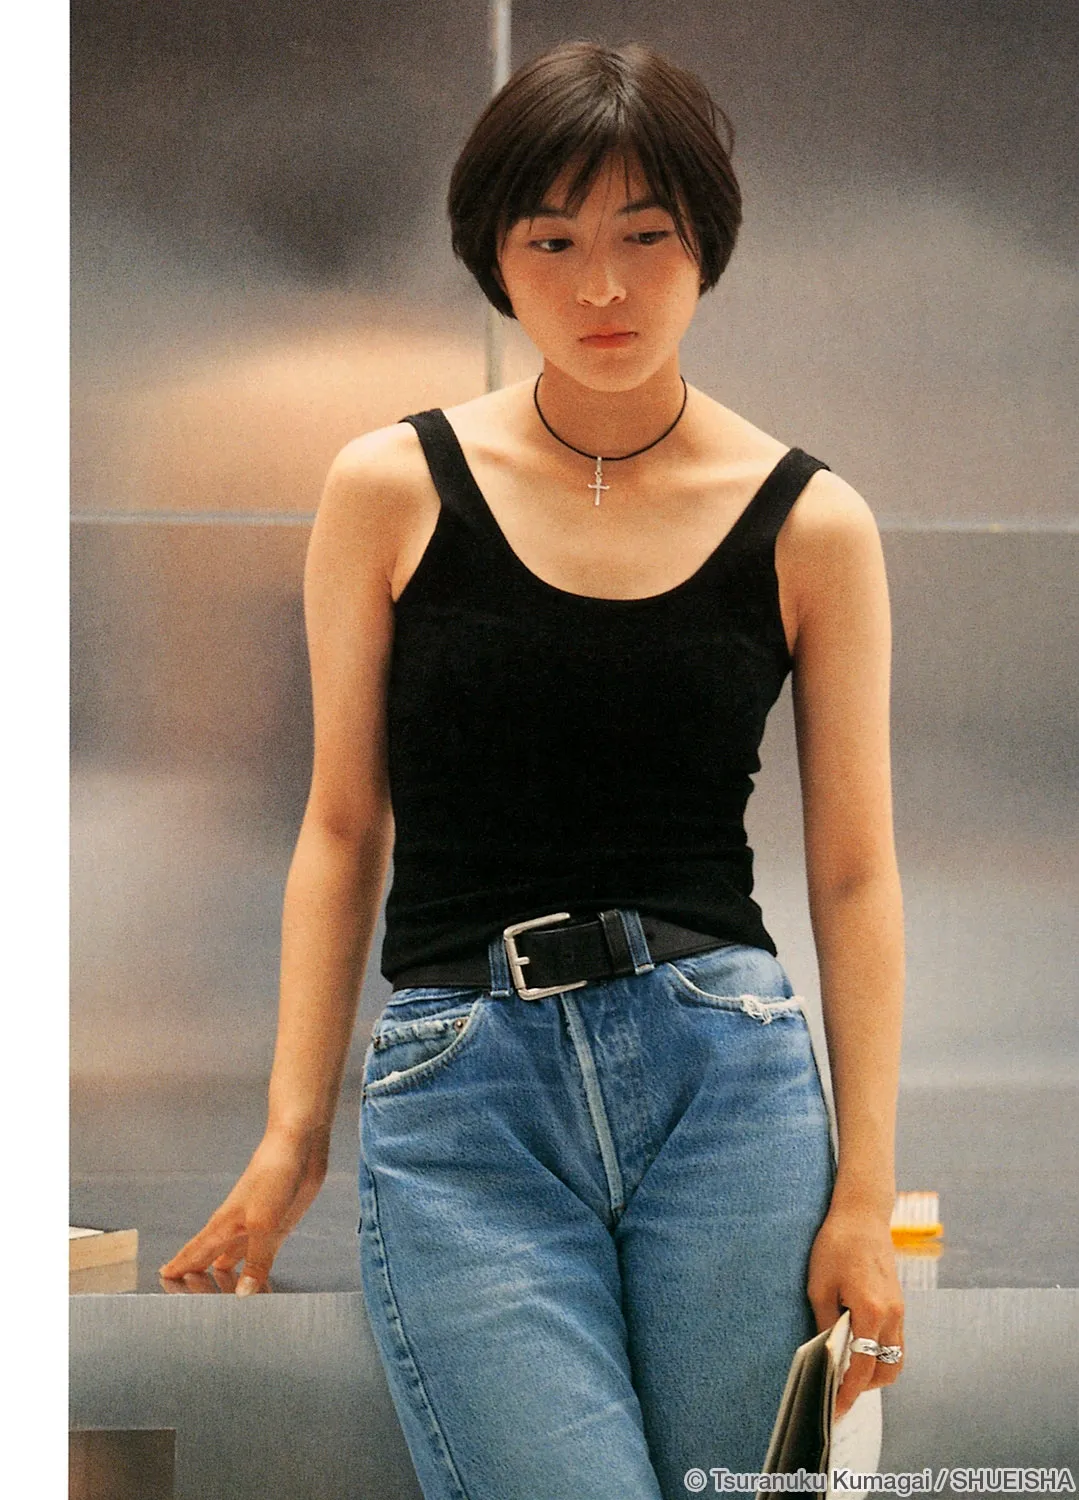 Риоко Хиросуэ в молодости